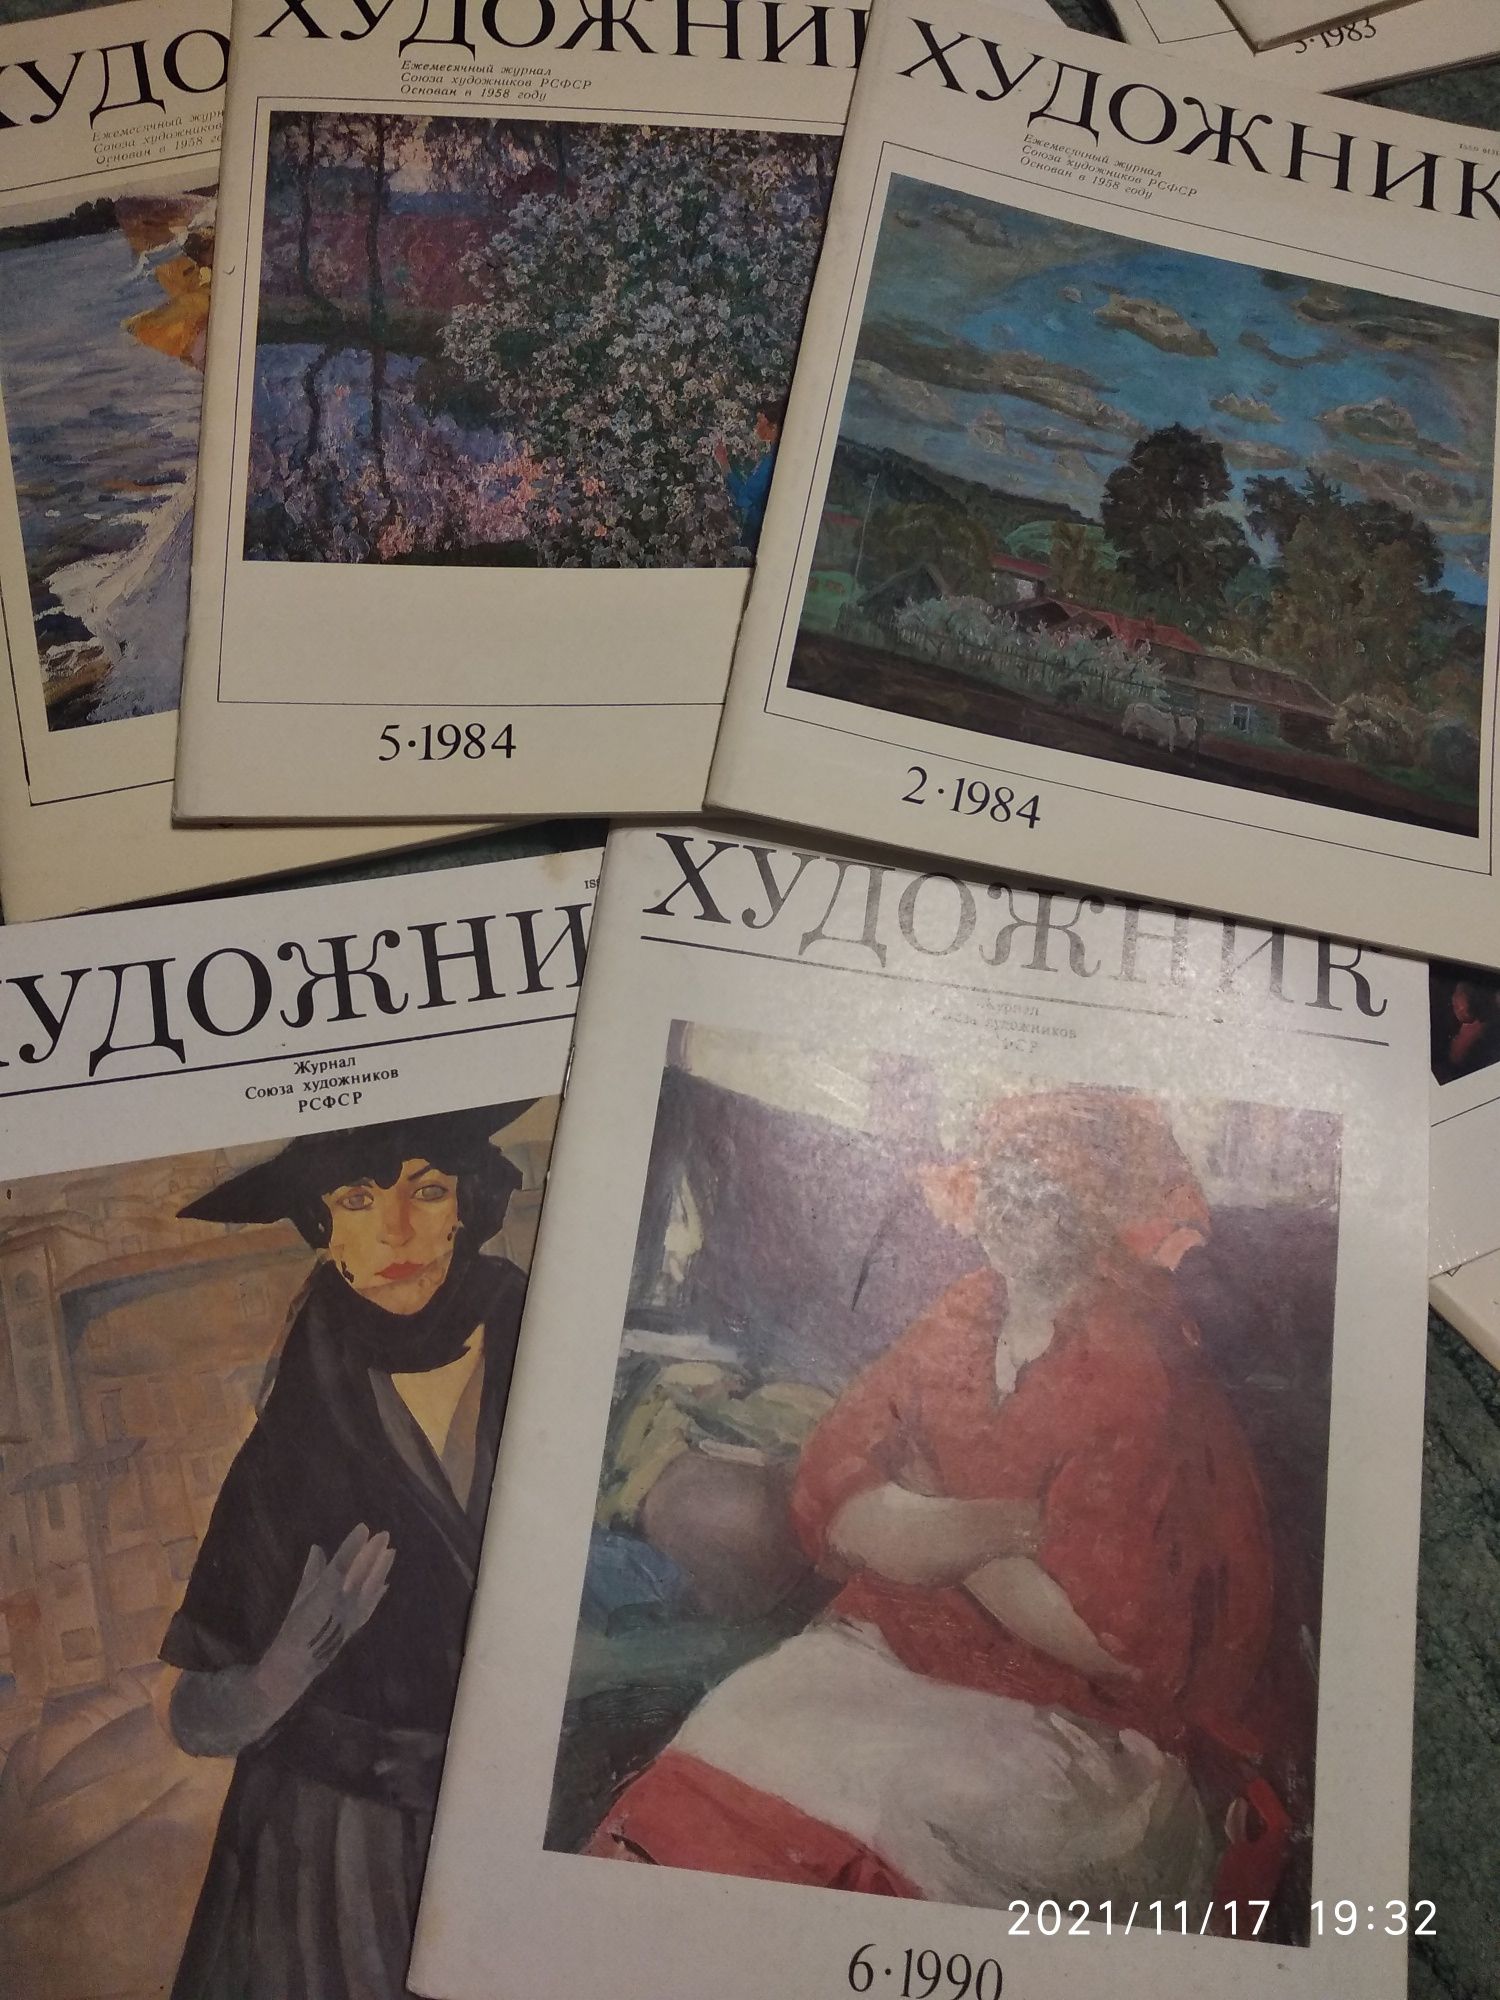 Журнал Художник раритетный. Всего  23 номера за 1982-1991 гг